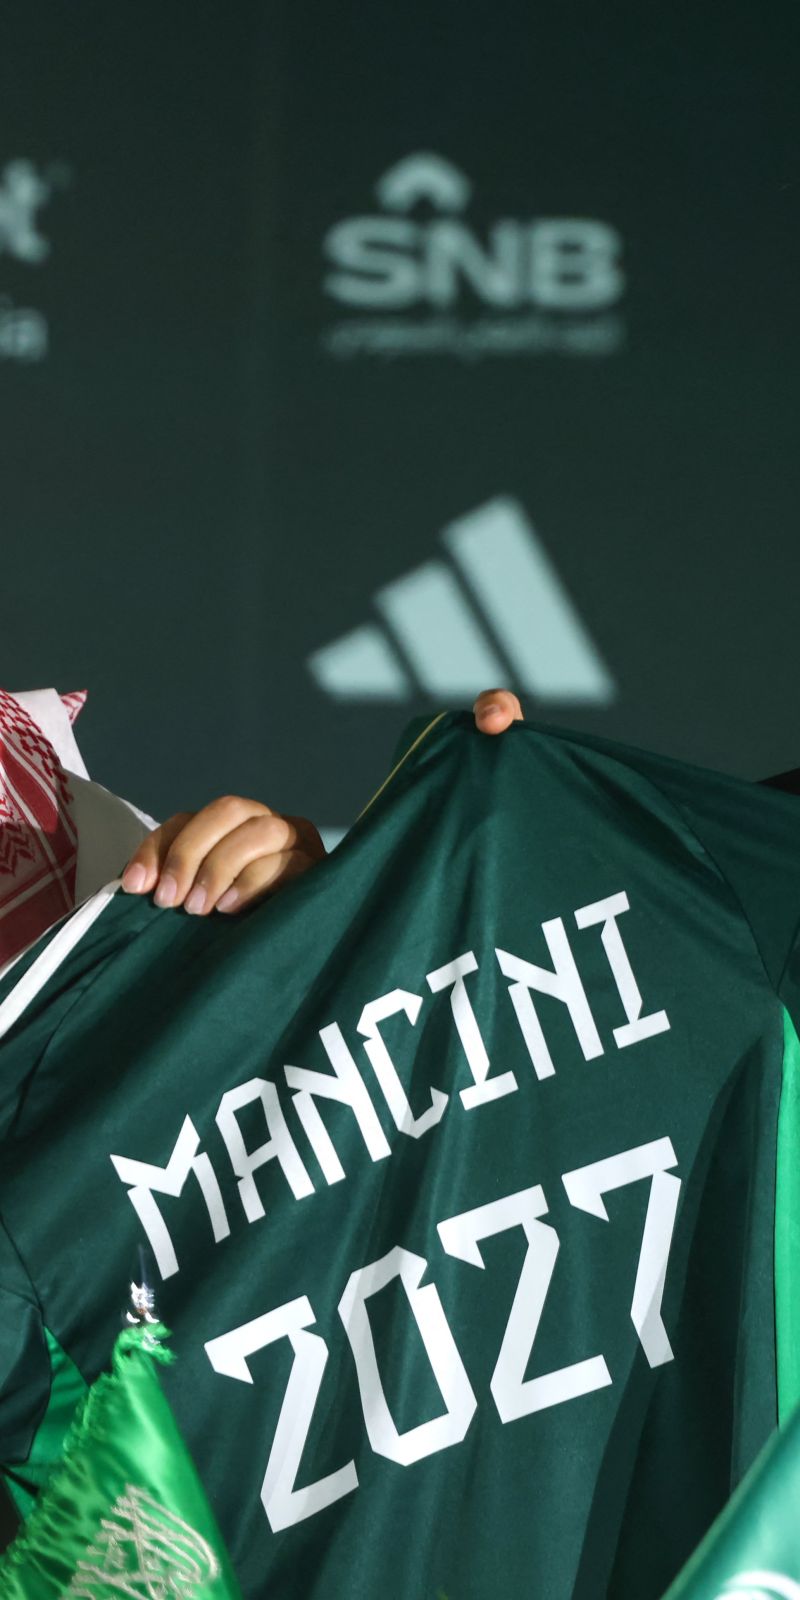 Mancini incar Piala Asia sebagai pelatih baru timnas Arab Saudi